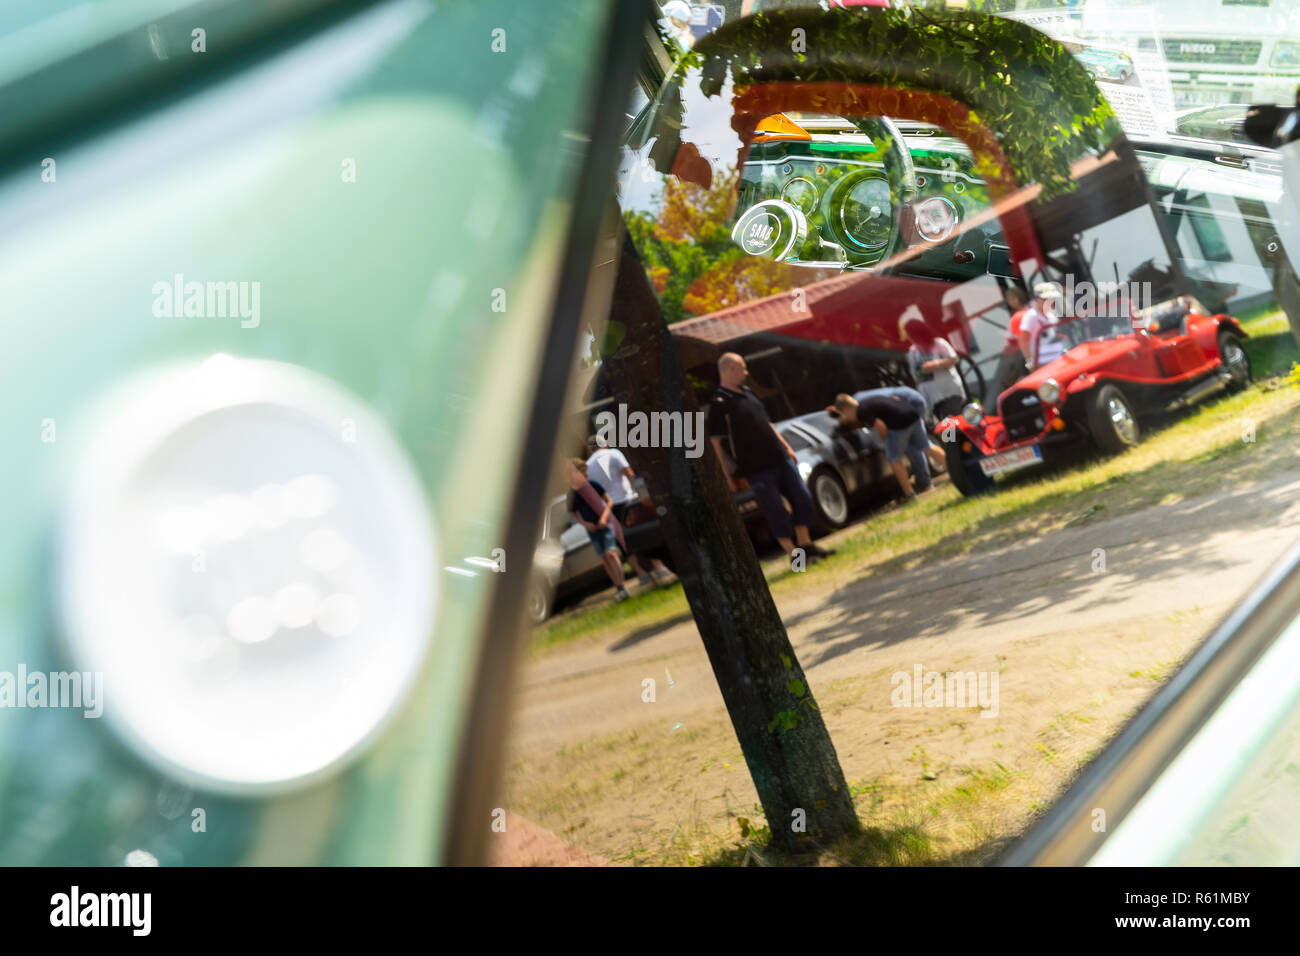 PAAREN IM GLIEN, Deutschland - 19. MAI 2018: In einem kompakten Auto Saab 96. Abstraktion. Blick durch das Glas, Reflexionen. Oldtimer-show 2018 sterben. Stockfoto